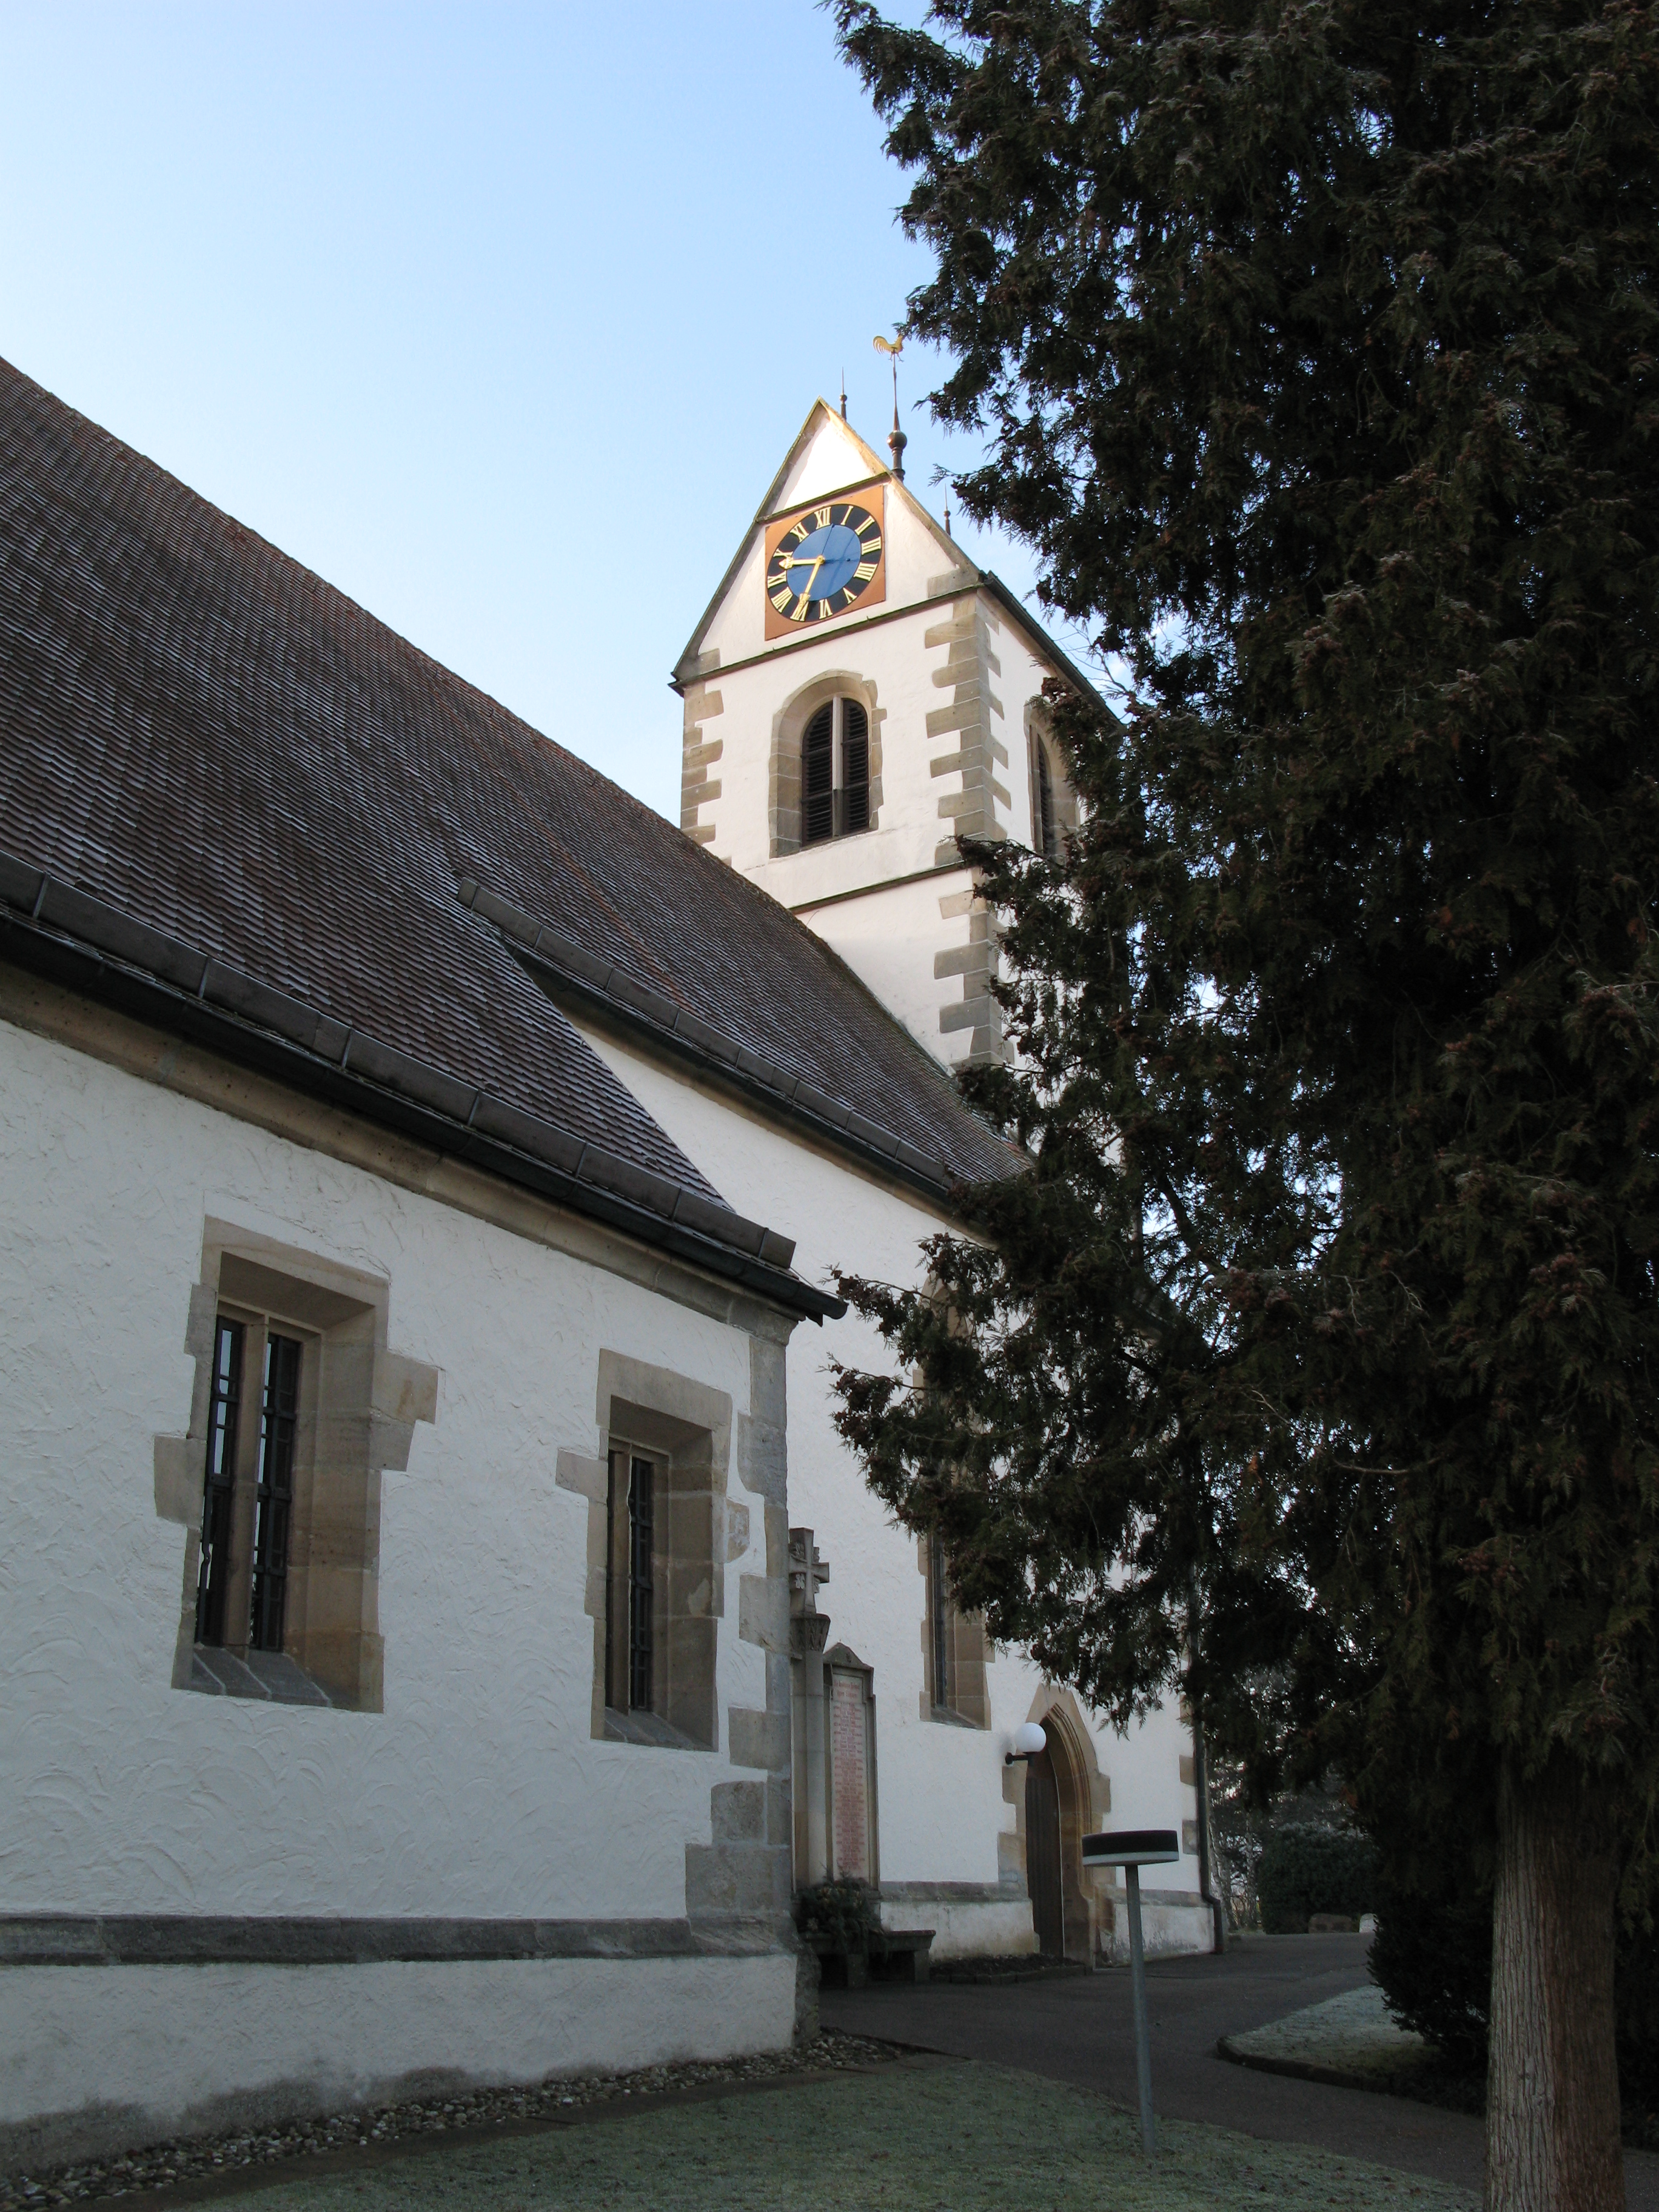 St.-Gallus-Kirche - Evangelische Kirchengemeinde Derendingen, Sieben-Höfe-Straße 150 in Tübingen